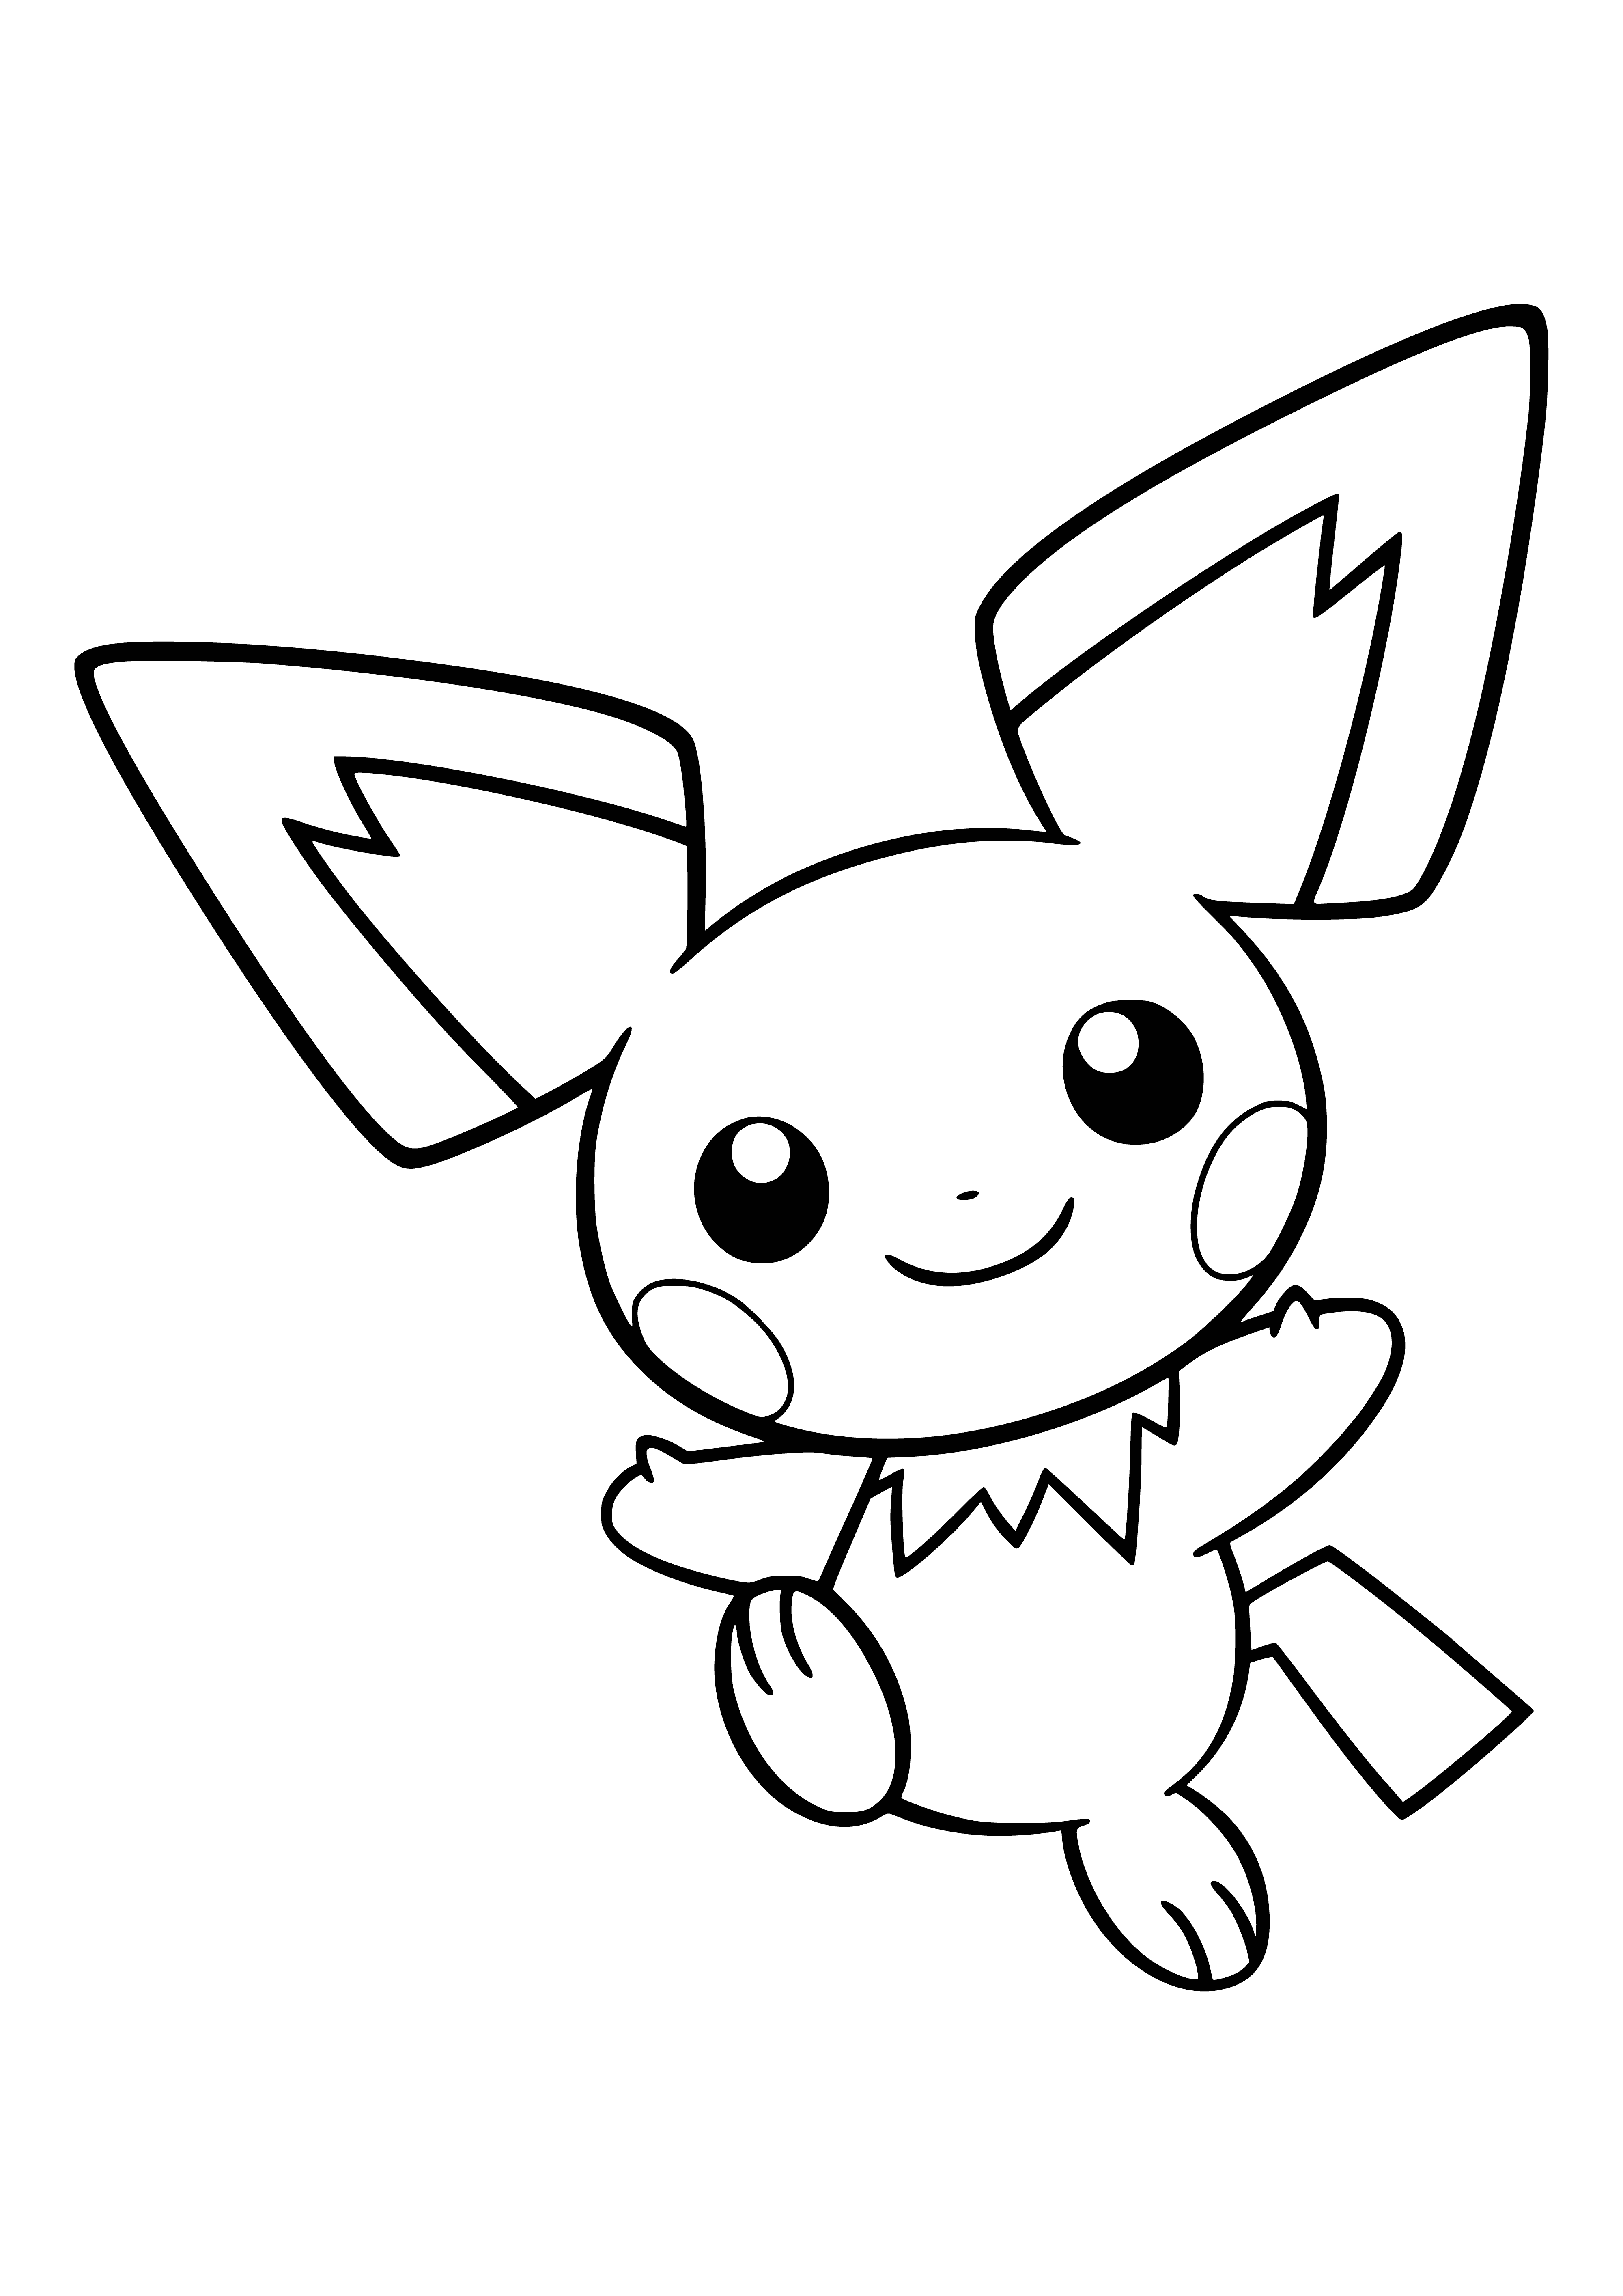 Pokemon Pichu coloring page